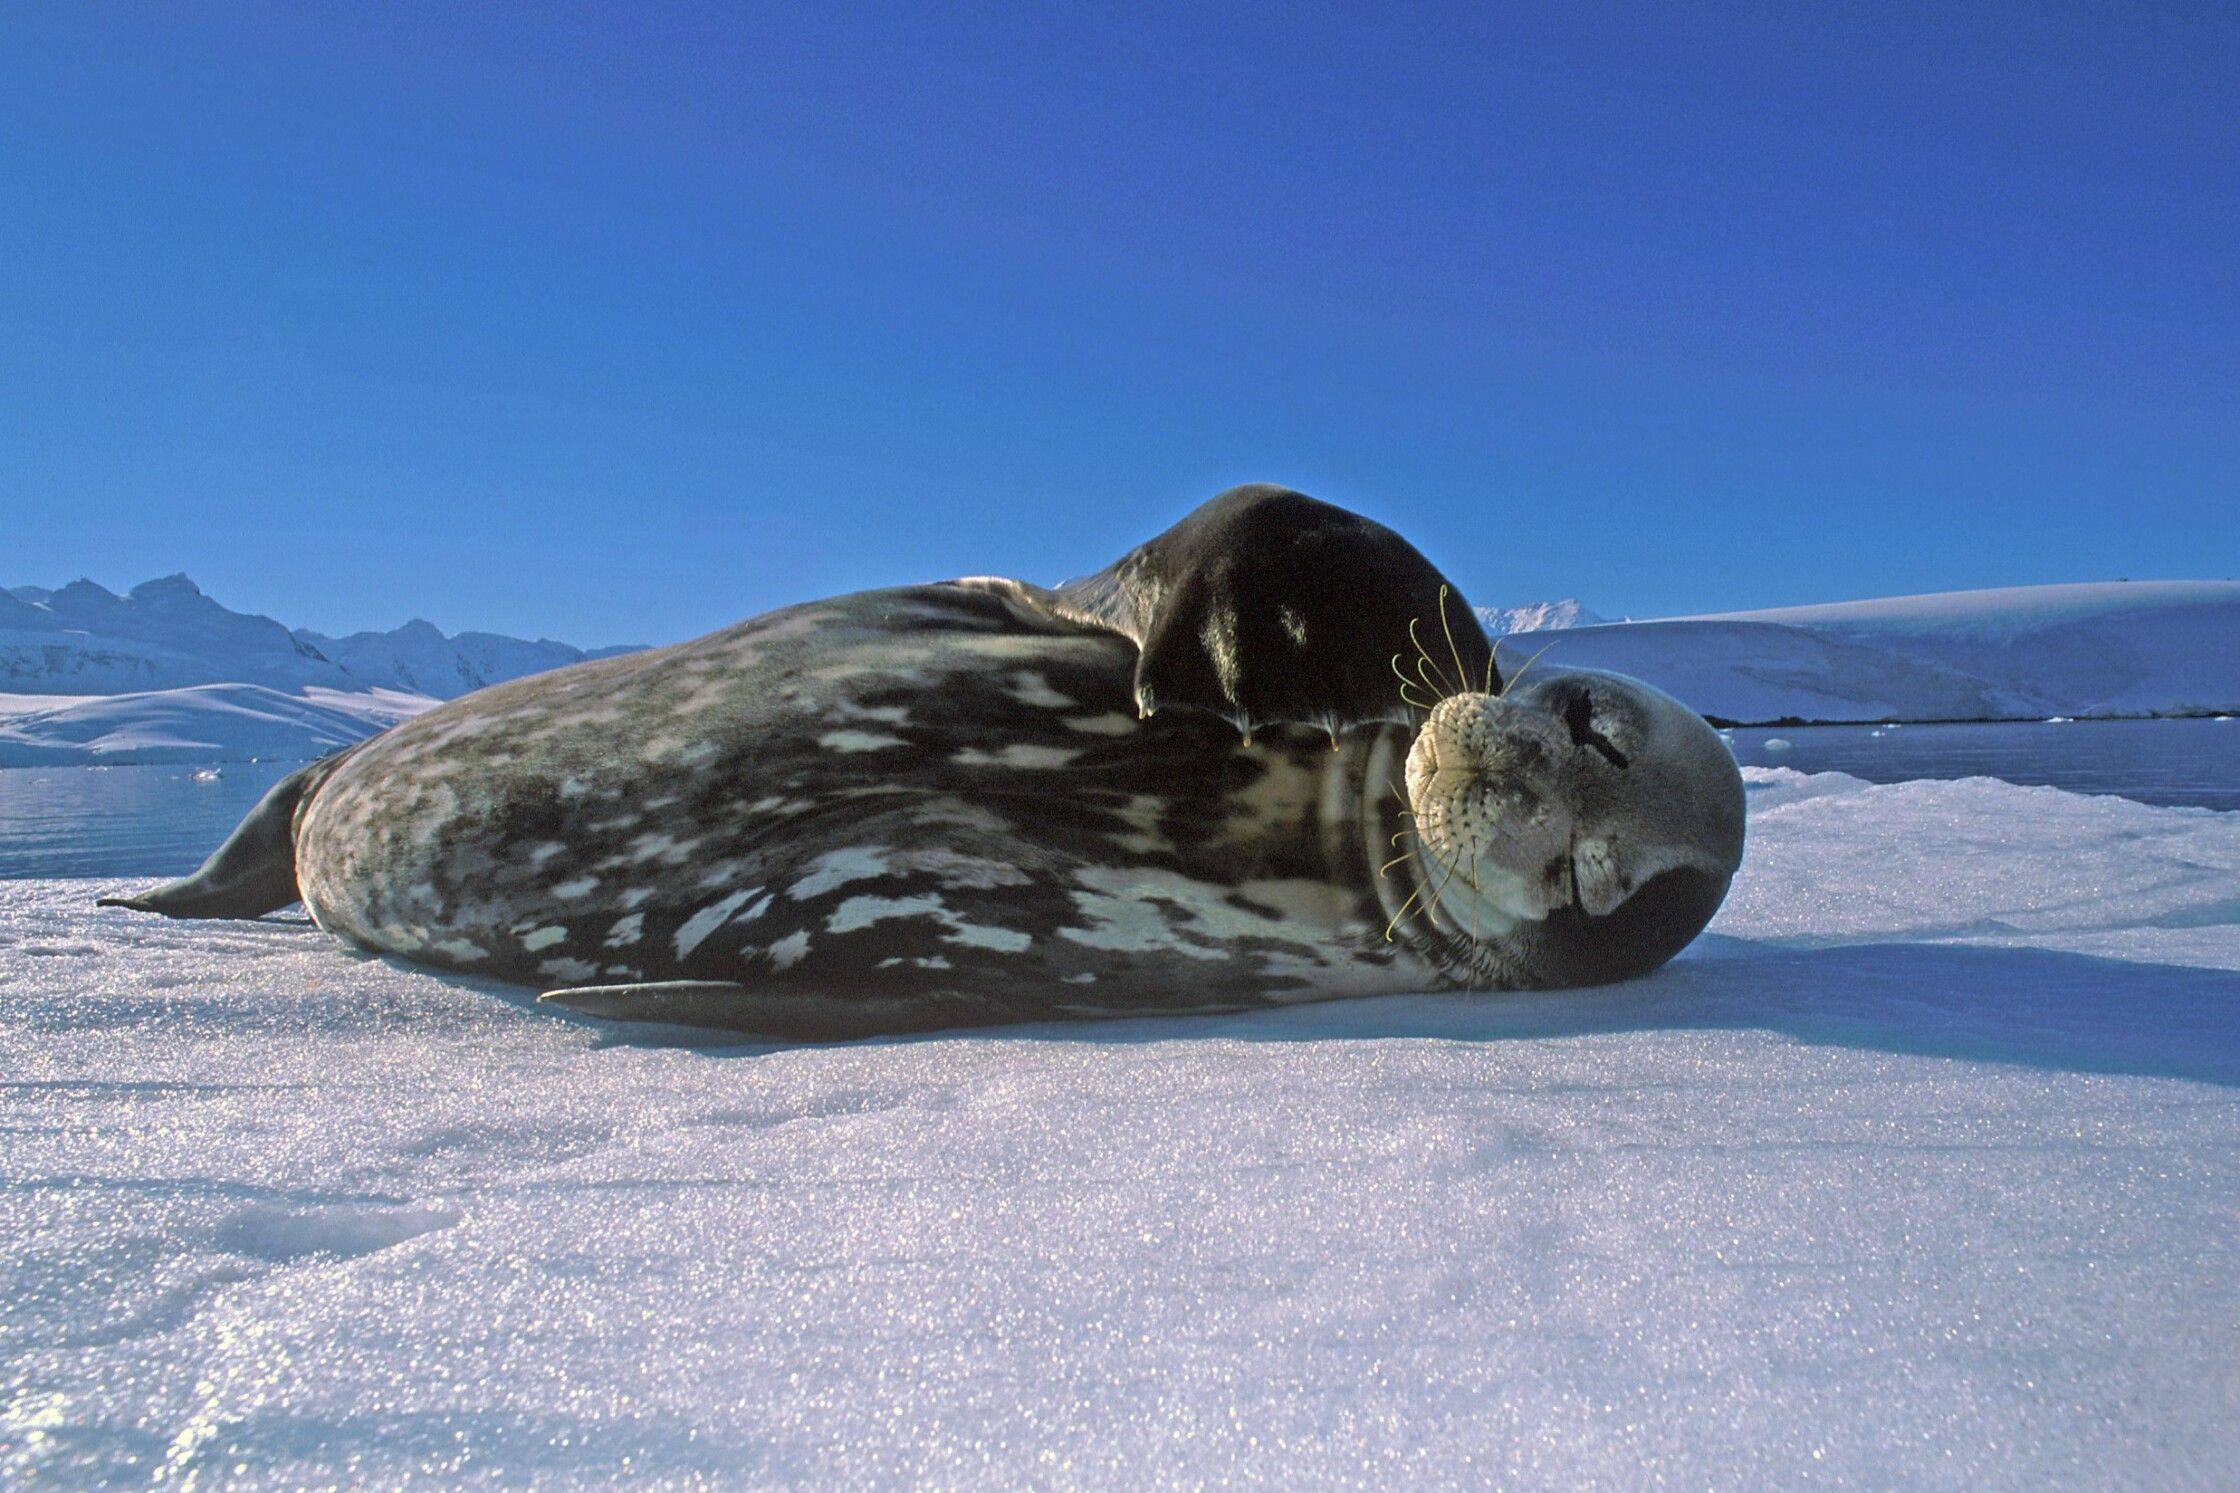 Тюлень уэдделла: фото, описание, образ жизни тюленя